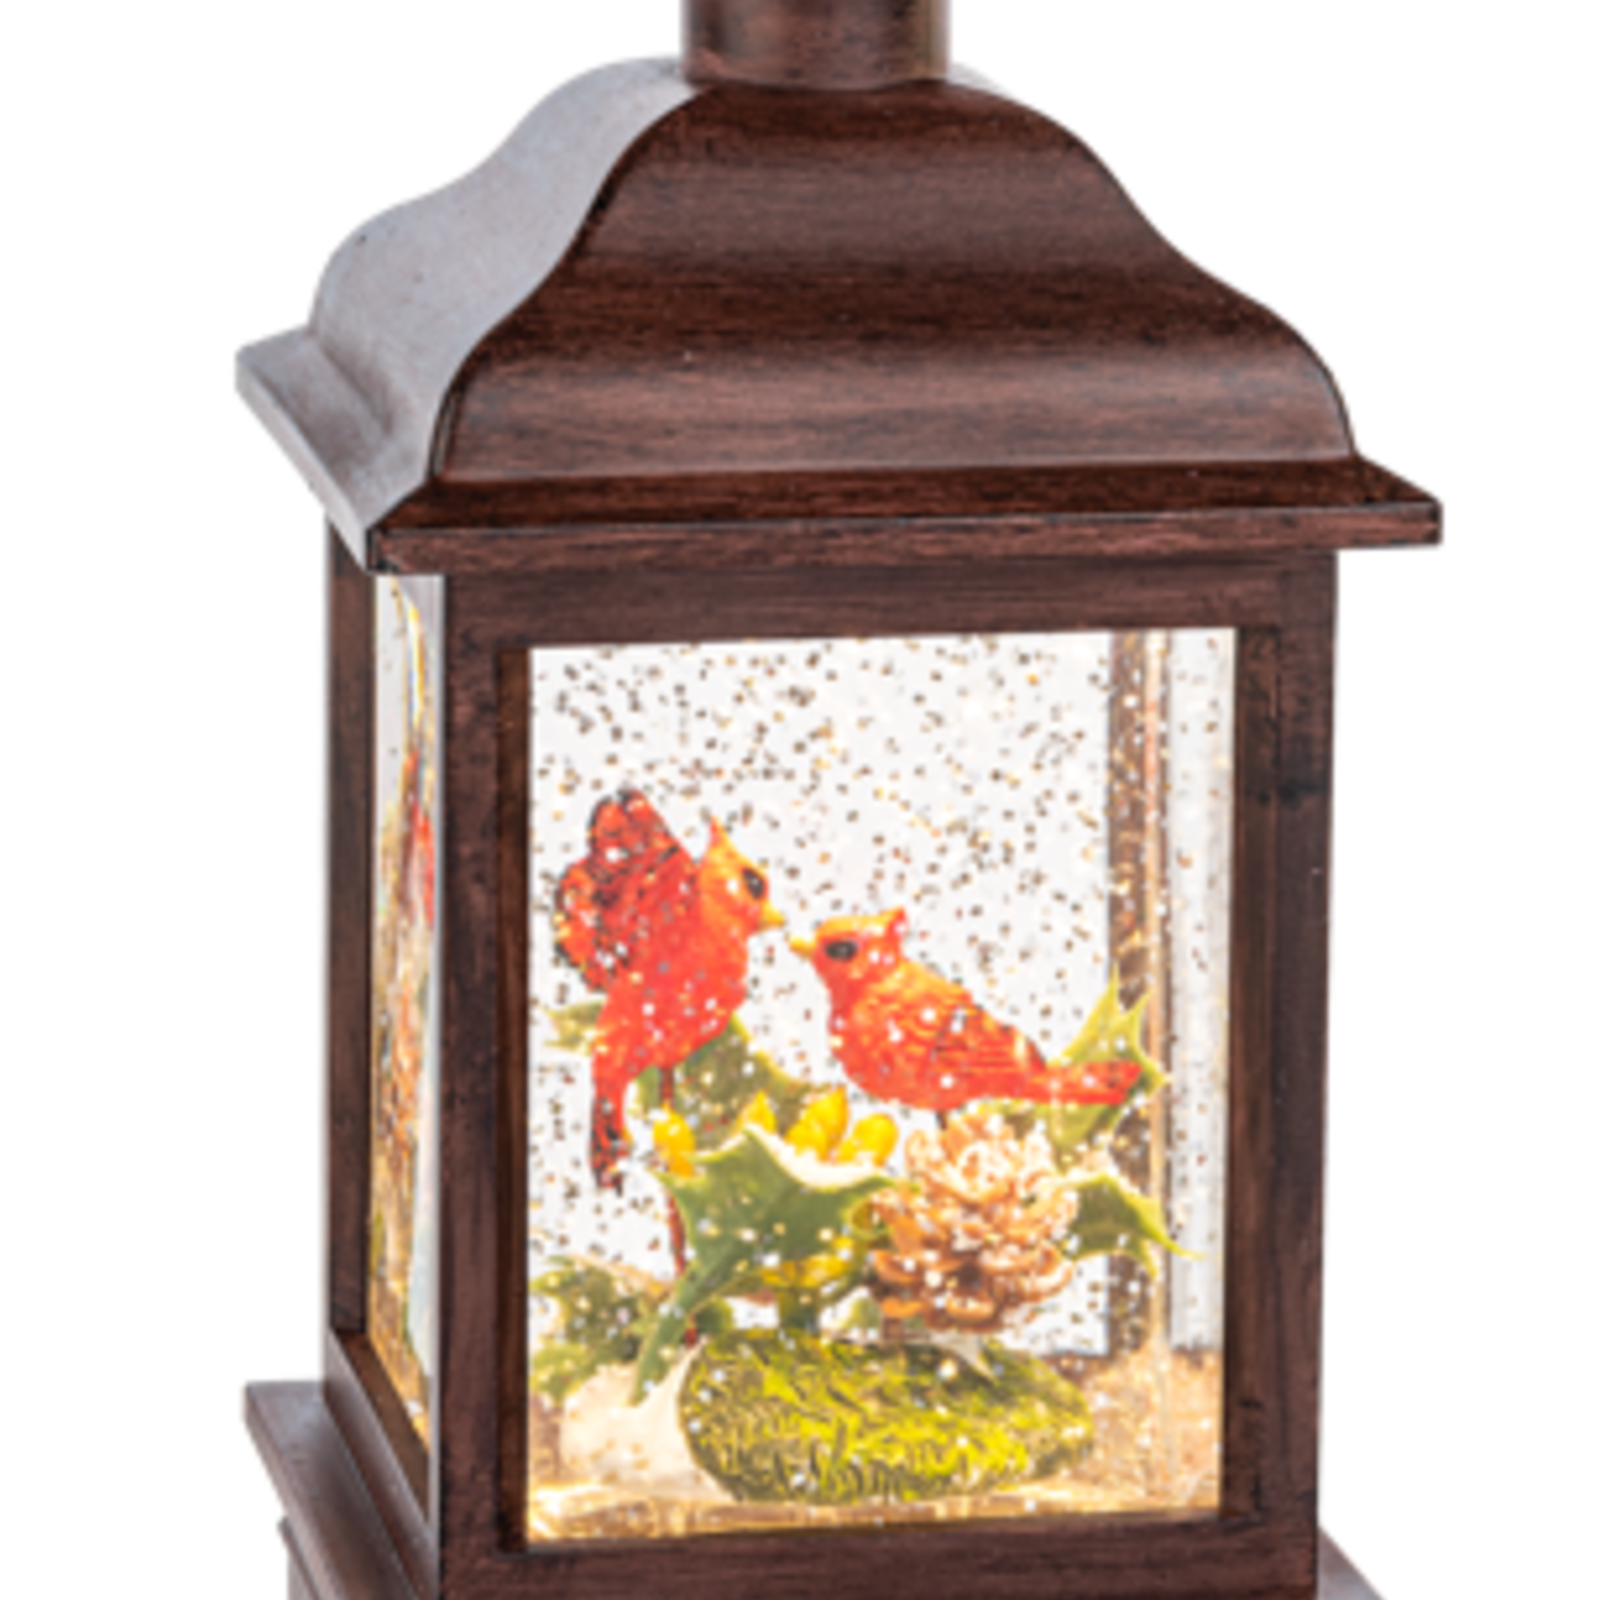 Ganz LED Light Up Shimmer Cardinals in Nest Lantern   MX188605 loading=